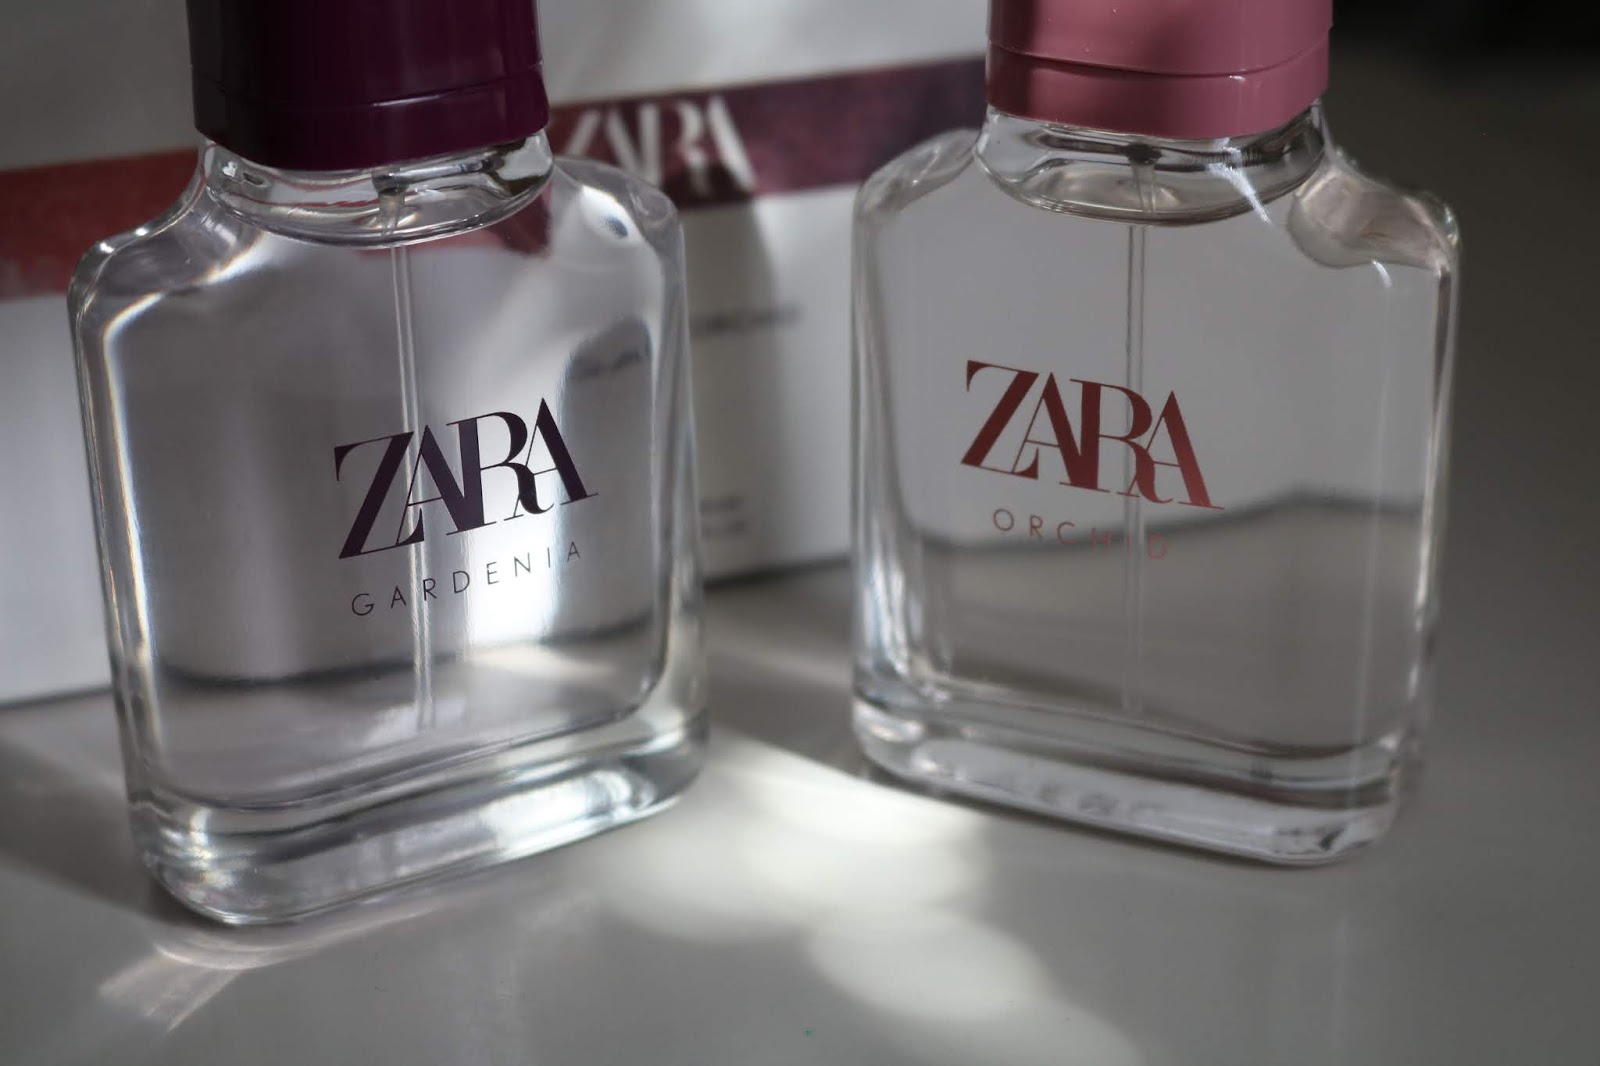 zara leather collection perfume gardenia